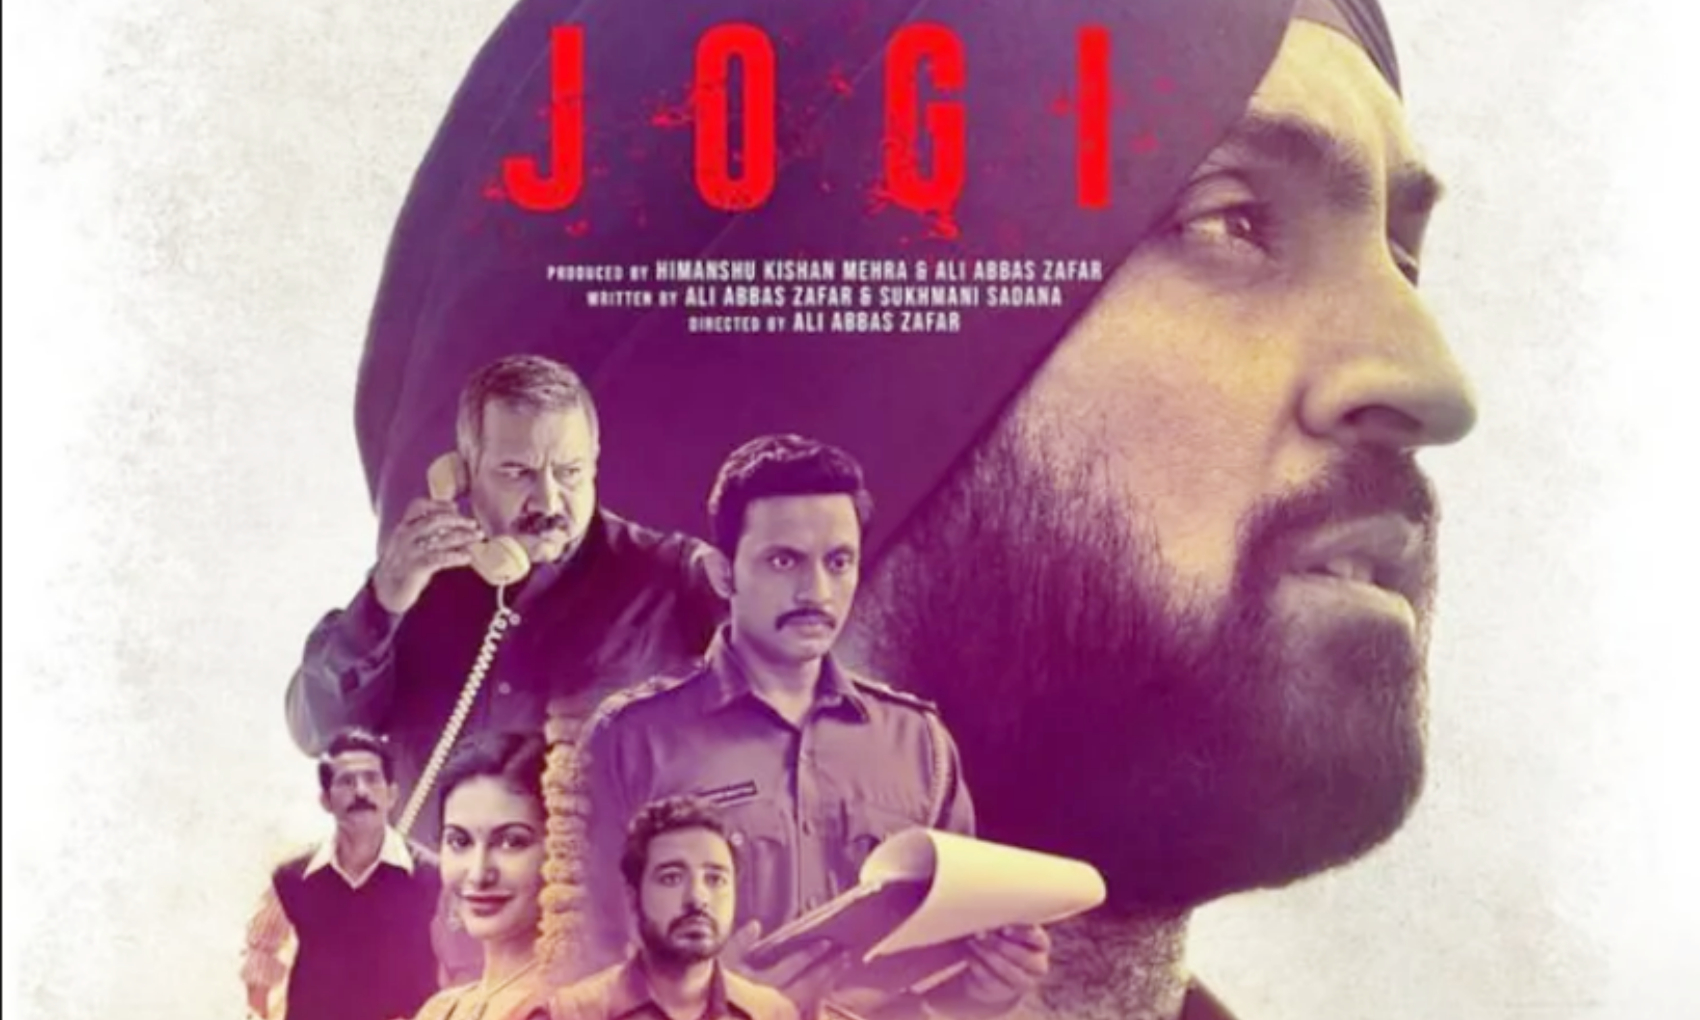 Jogi Trailer: दिलजीत दोसांझ की फिल्म ‘जोगी’ का ट्रेलर आउट, रुला देगी द‍िल्‍ली के स‍िख दंगों की दर्दनाक कहानी